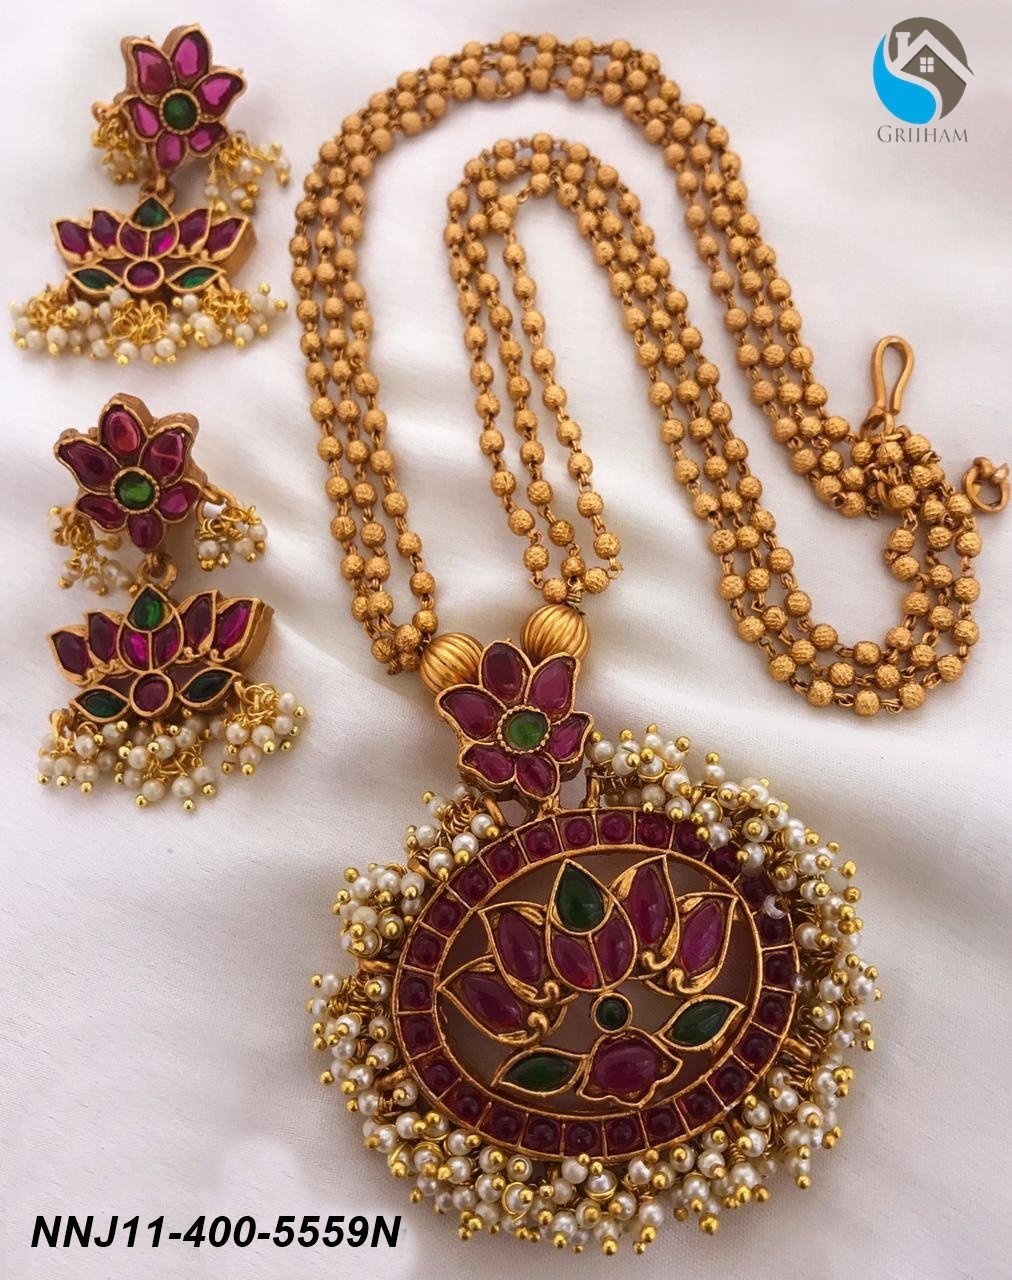 Premium Antique Gold Finish Pendant set with multi stones 5559n